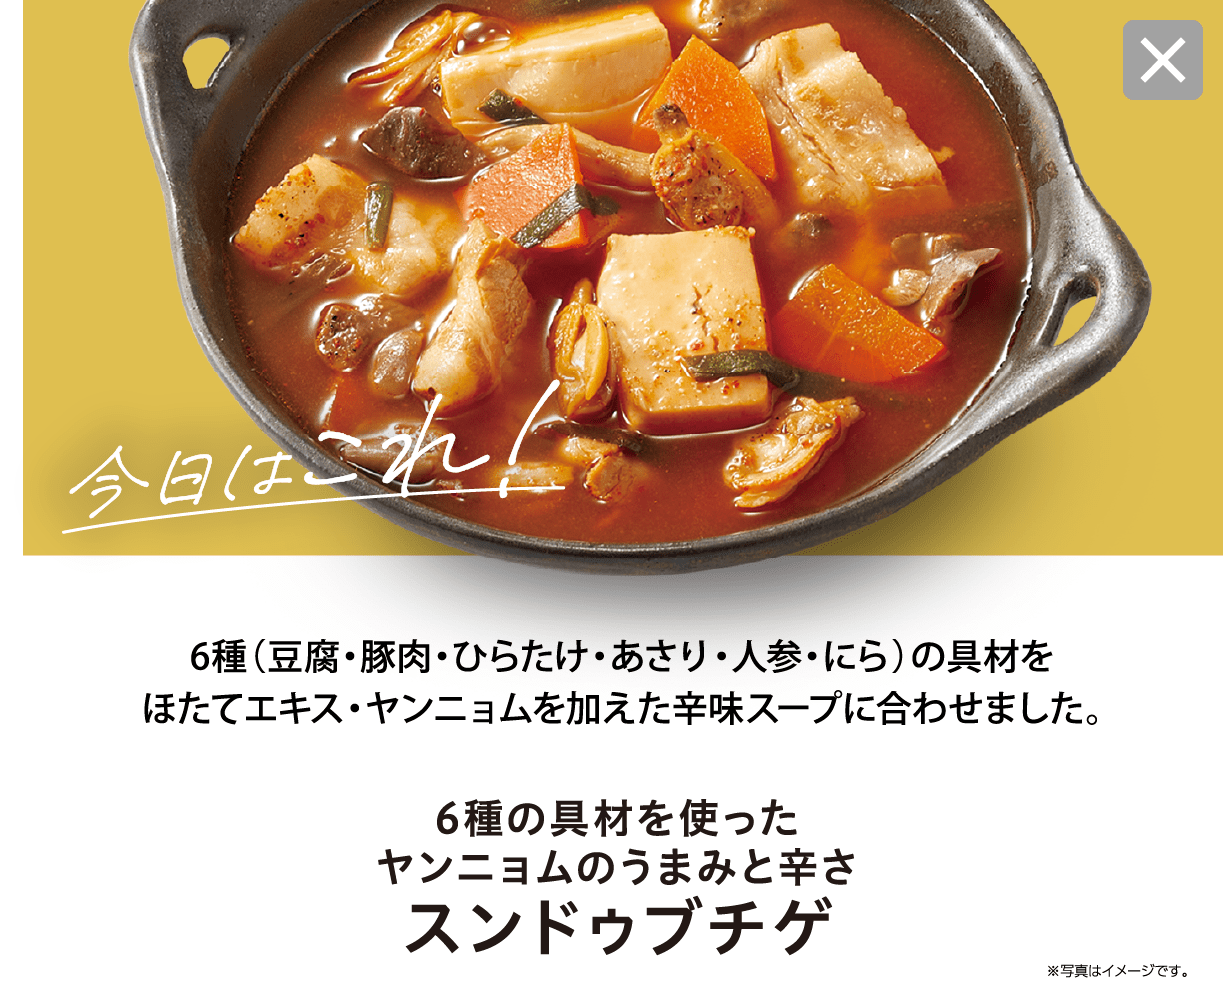 辛味スープにほたて・ヤンニョムを加え、具材から出るうまみで深い味わい。 6種の具材を使ったヤンニョムのうまみと辛さ スンドゥブチゲ ※写真はイメージです。